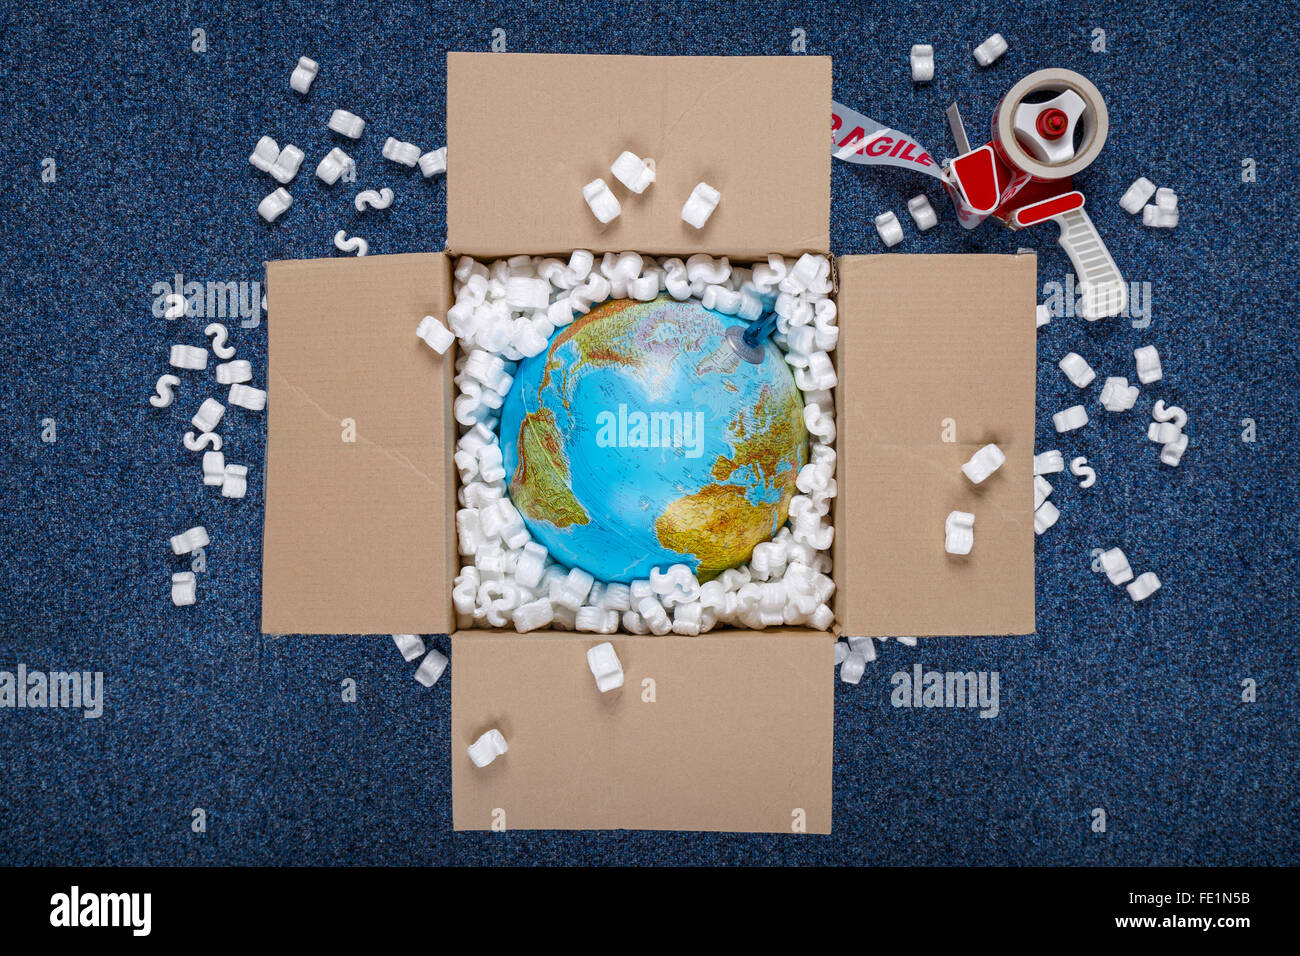 Eine Weltkugel in einer Box von Verpackung Chips mit zerbrechlichen Band umgeben. gutes Bild für internationale Lieferung Konzepte. Stockfoto